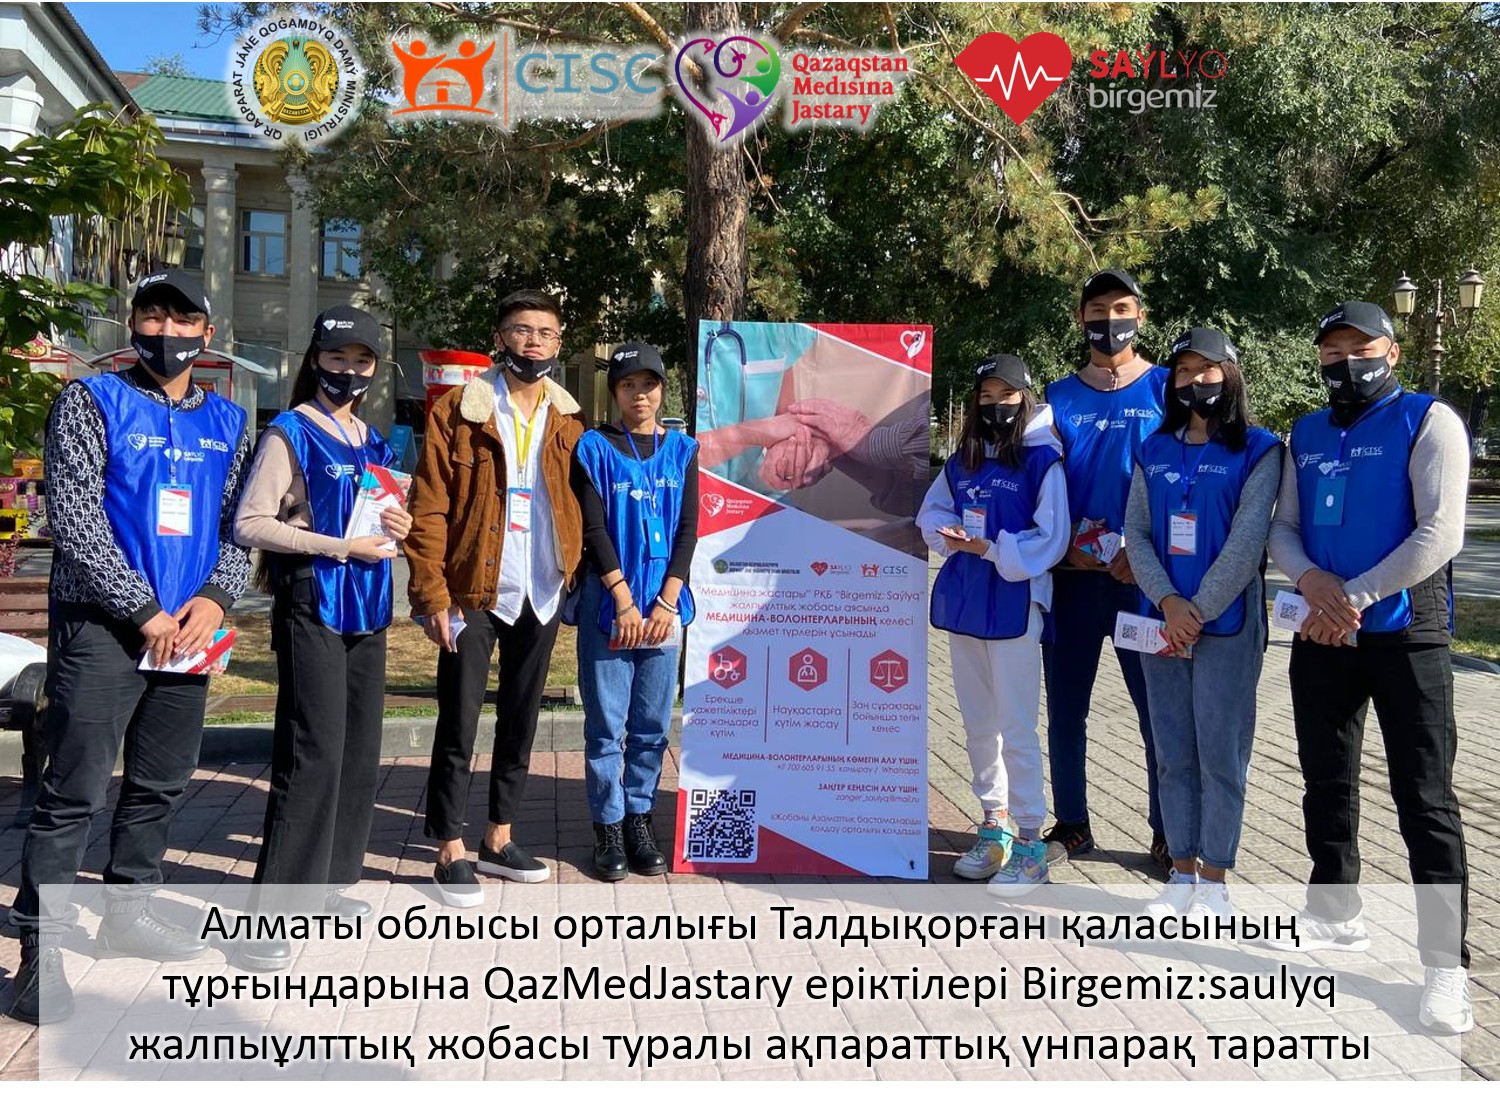 Birgemiz: Saýlyq жалпыұттық жобасы аясында Алматы облысында координациялық жұмыс